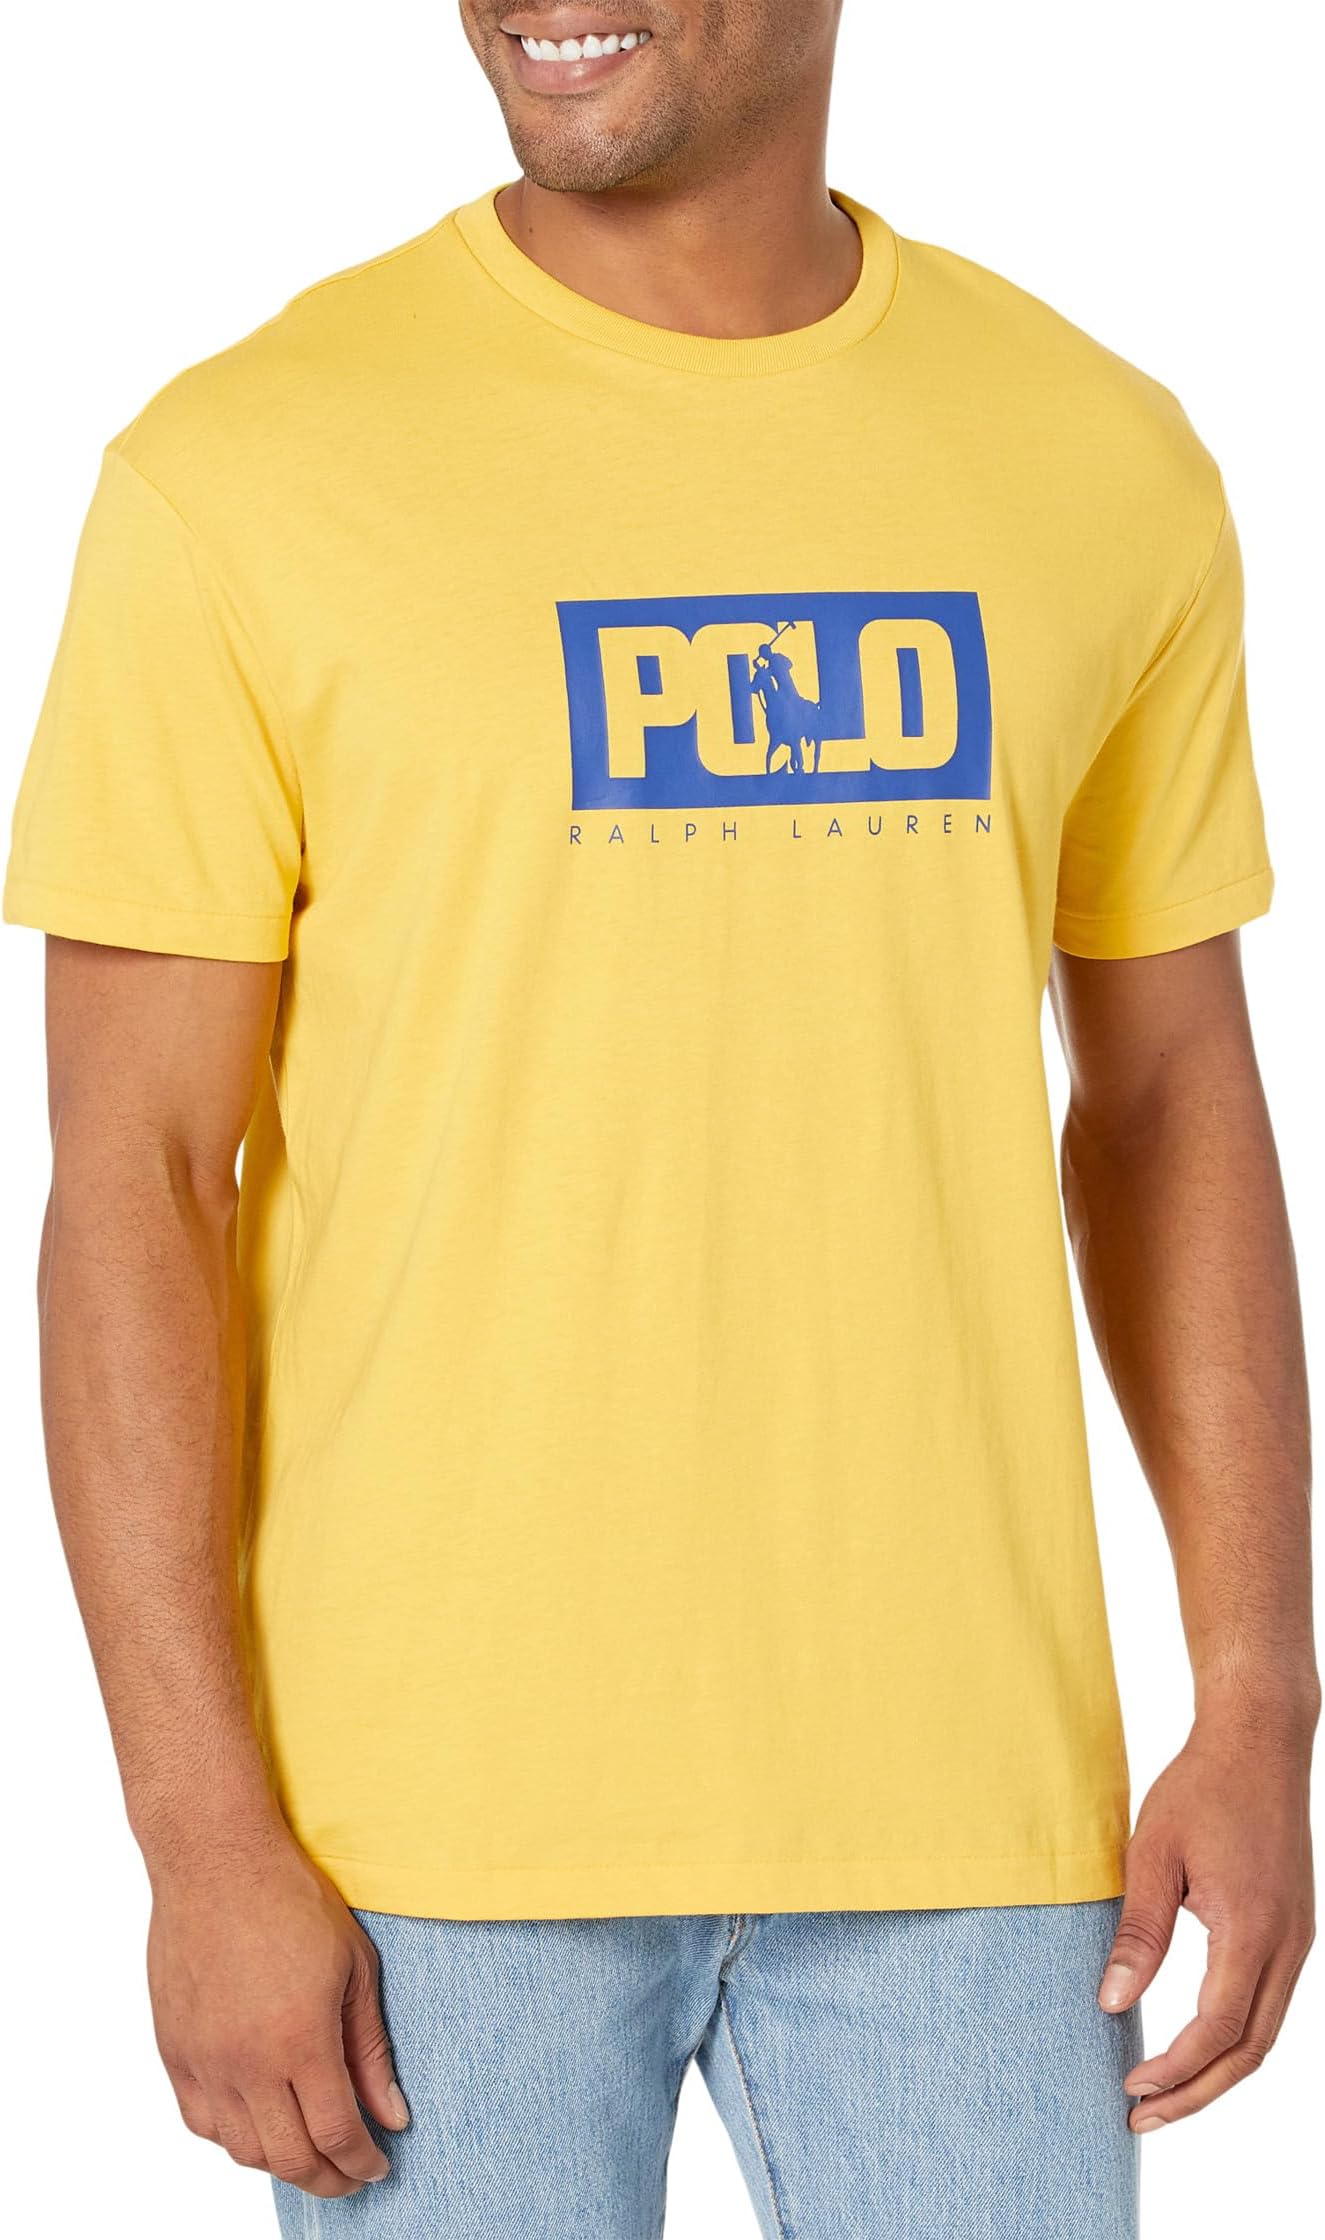 Классическая футболка из джерси с логотипом Polo Ralph Lauren, цвет Canary Yellow